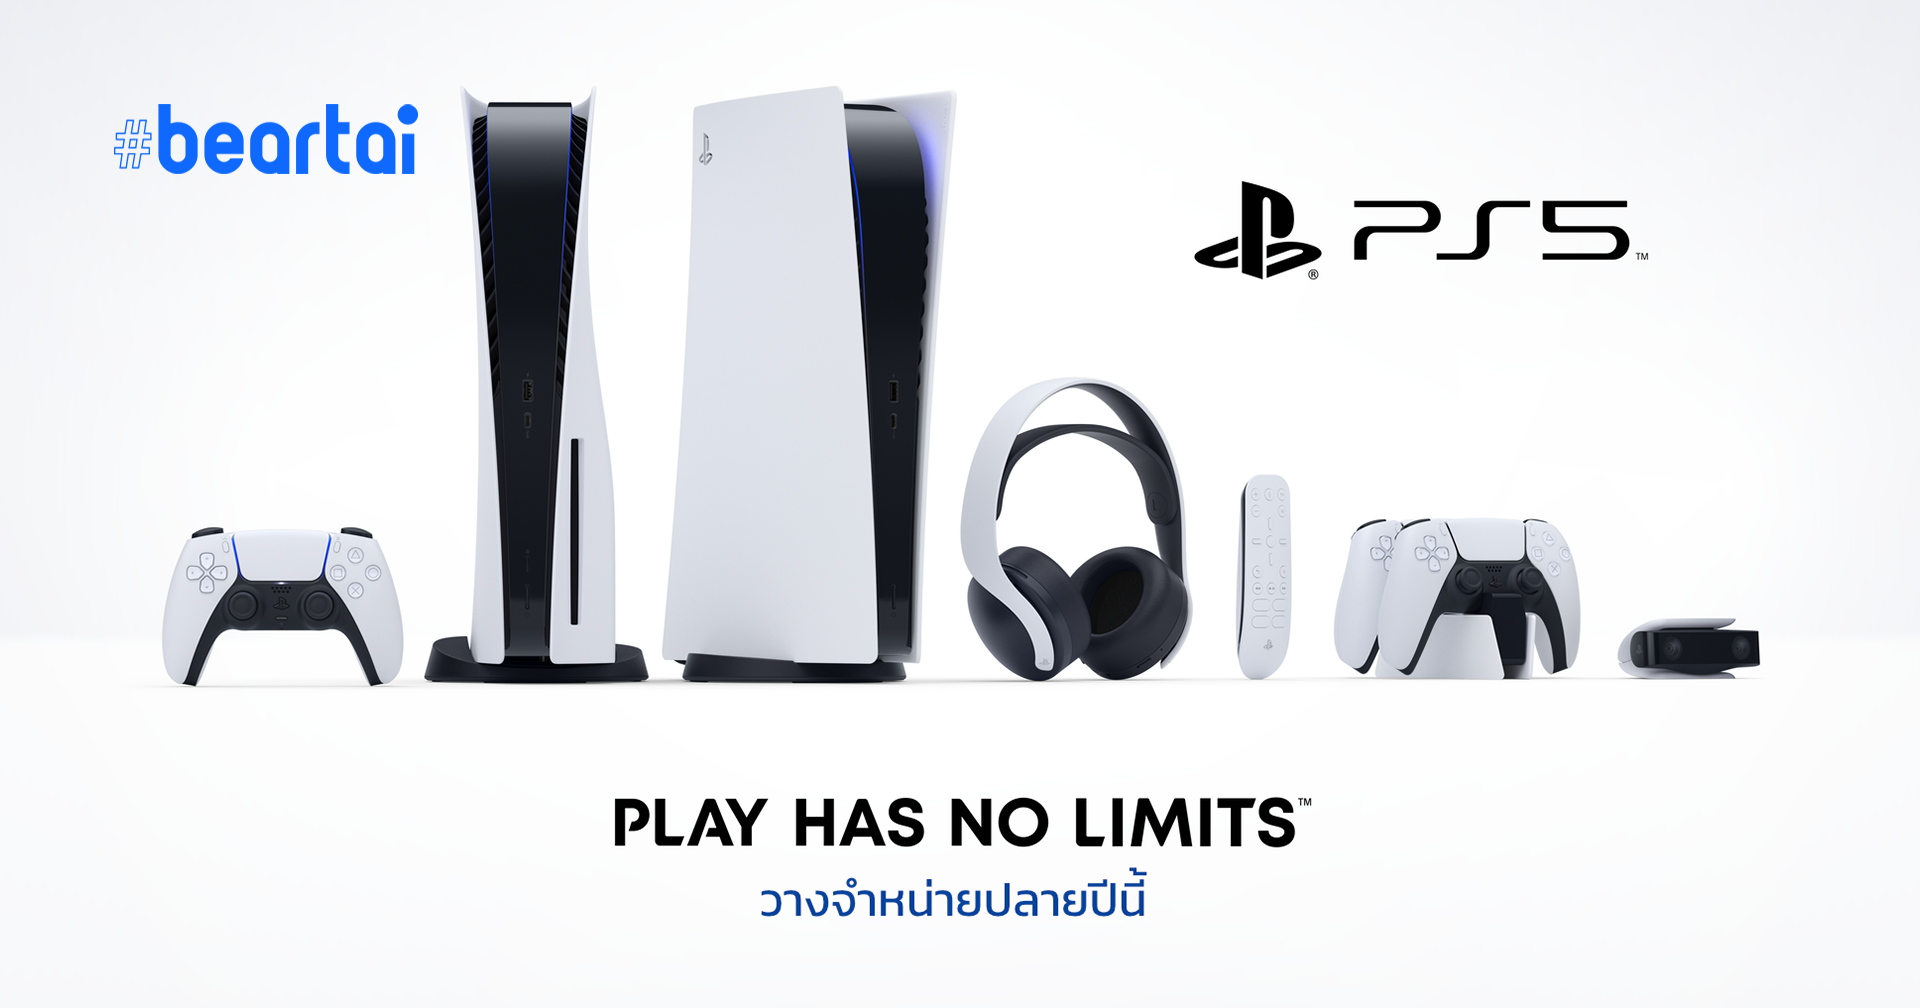 เว็บไซต์ Sony ไทย เผยวันวางจำหน่าย PlayStation 5 “ปลายปี 2020 นี้”